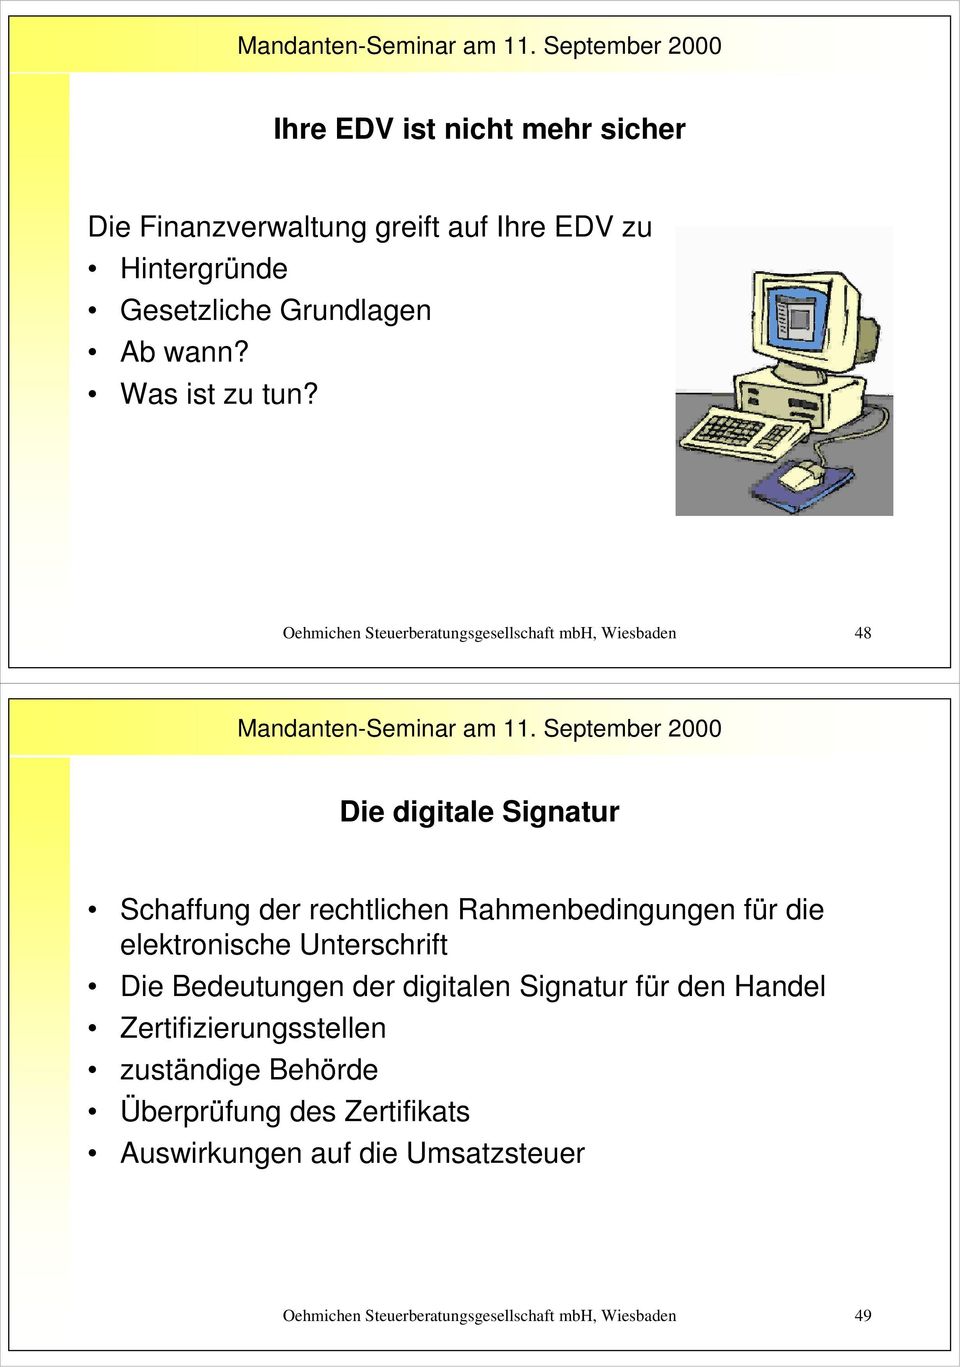 Oehmichen Steuerberatungsgesellschaft mbh, Wiesbaden 48 Die digitale Signatur Schaffung der rechtlichen Rahmenbedingungen für